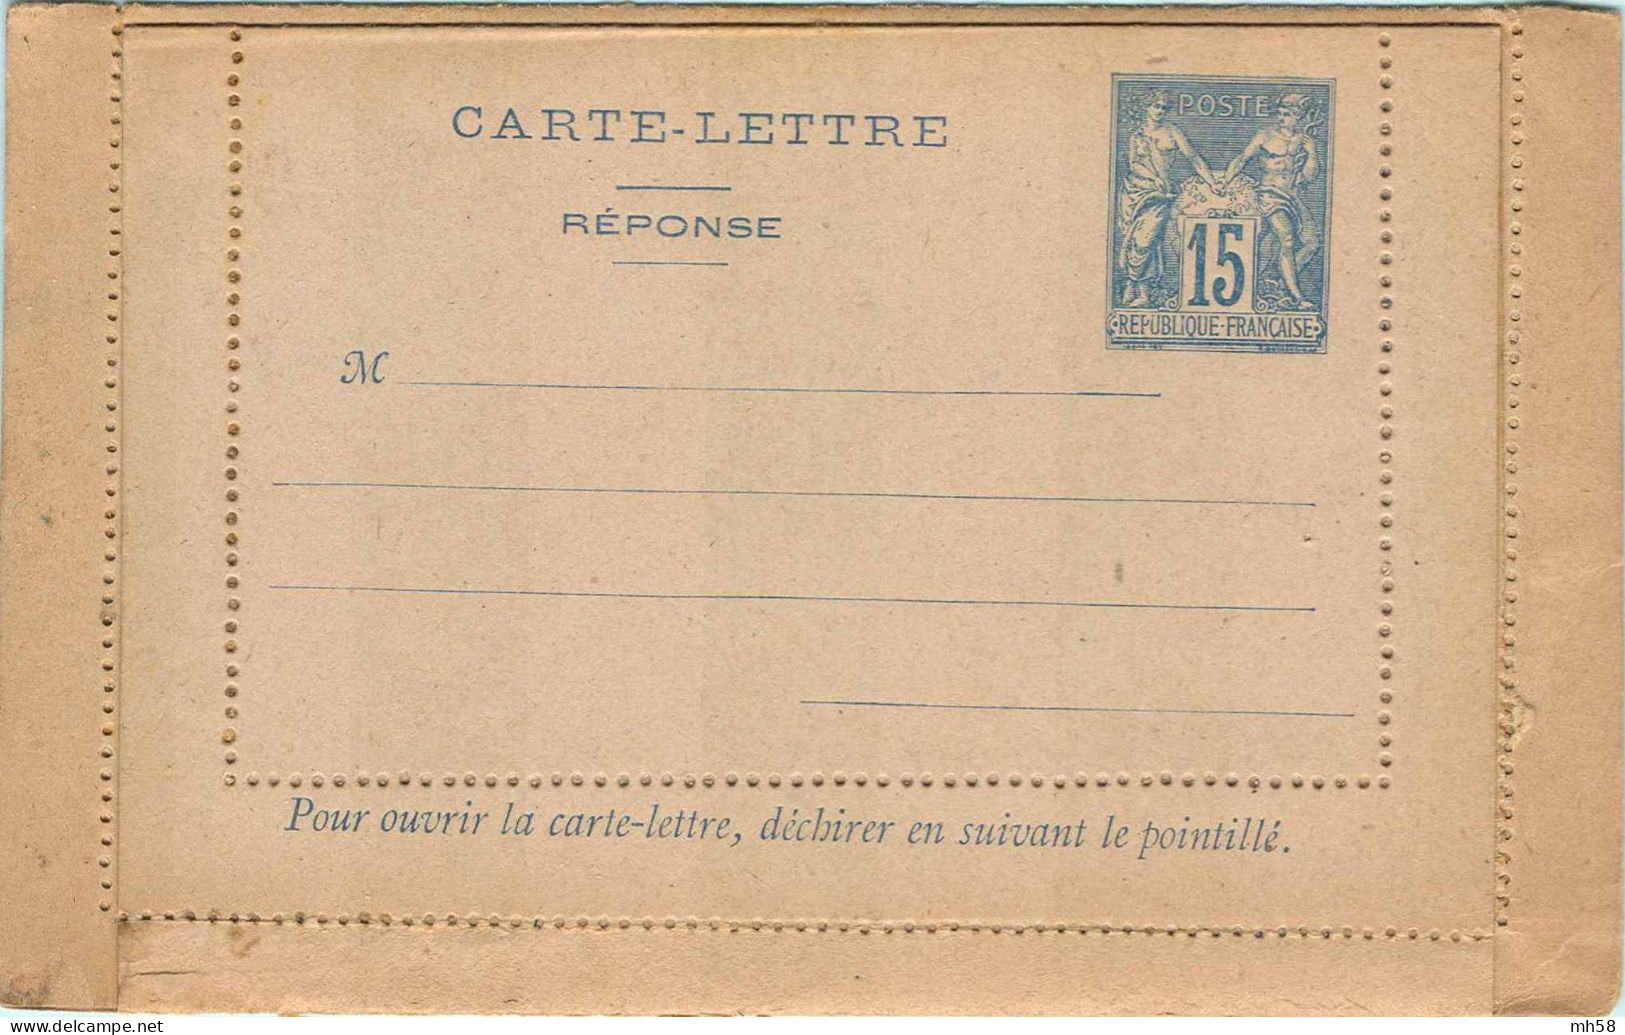 Entier FRANCE - Carte-lettre Réponse Payée Piquage C Carton Gris Neuf - 15c Sage Bleu - Cartes-lettres